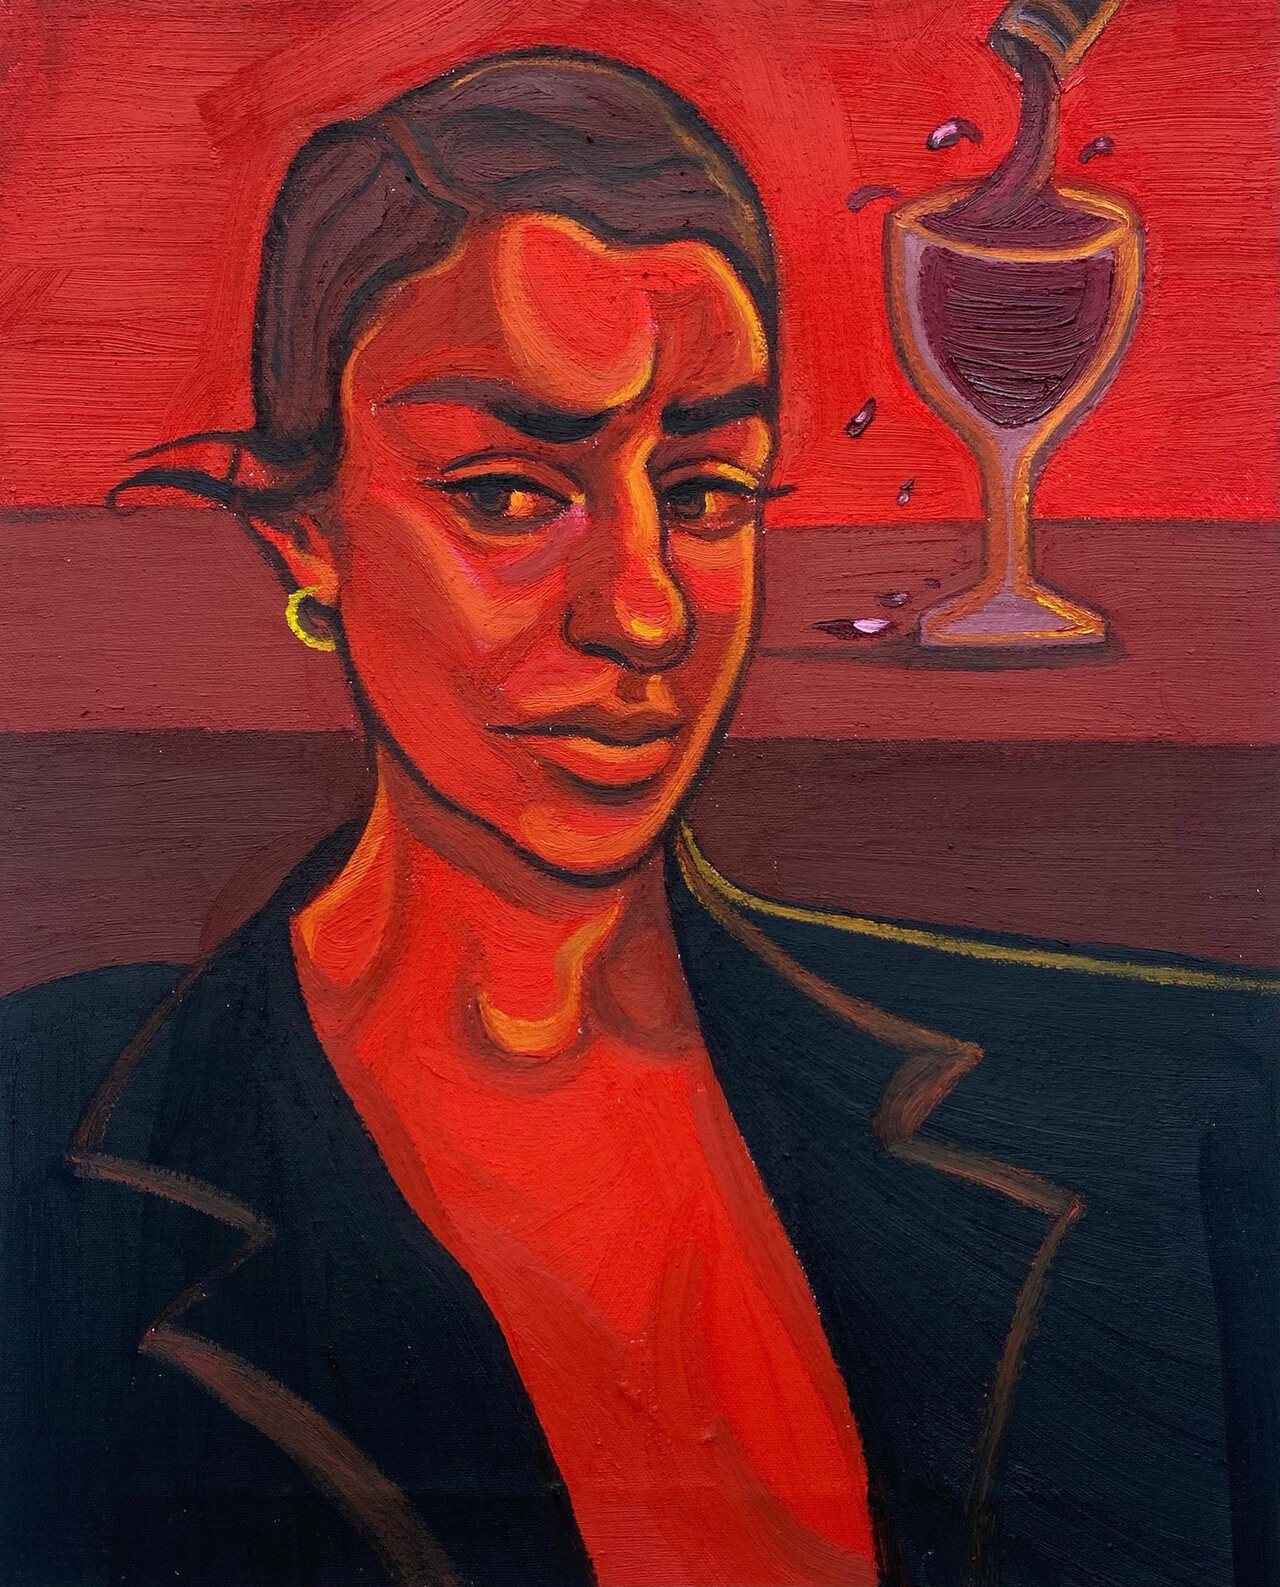 Ania Hobson, "Good Choices", 2021, Oil on canvas, 51×41cm.  / Courtesy of Ania Hobson